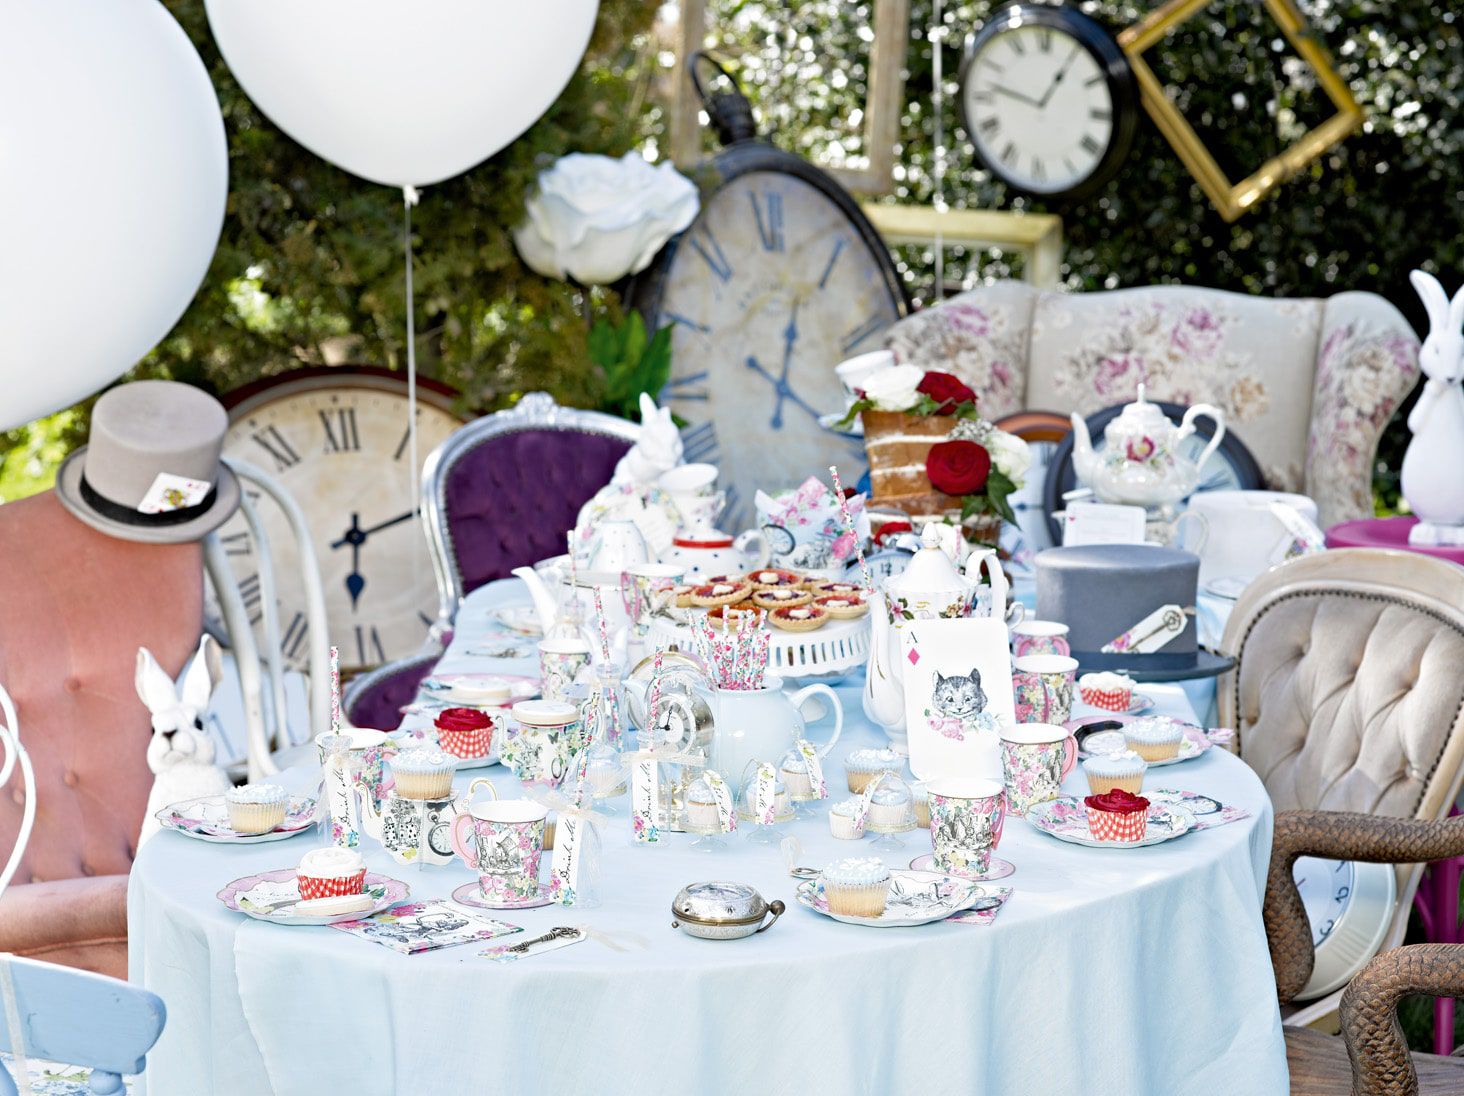 Alice in Wonderland Party Ideas | Throw an Alice in Wonderland Tea Party with ideas for Food, Decorations & Fancy Dress